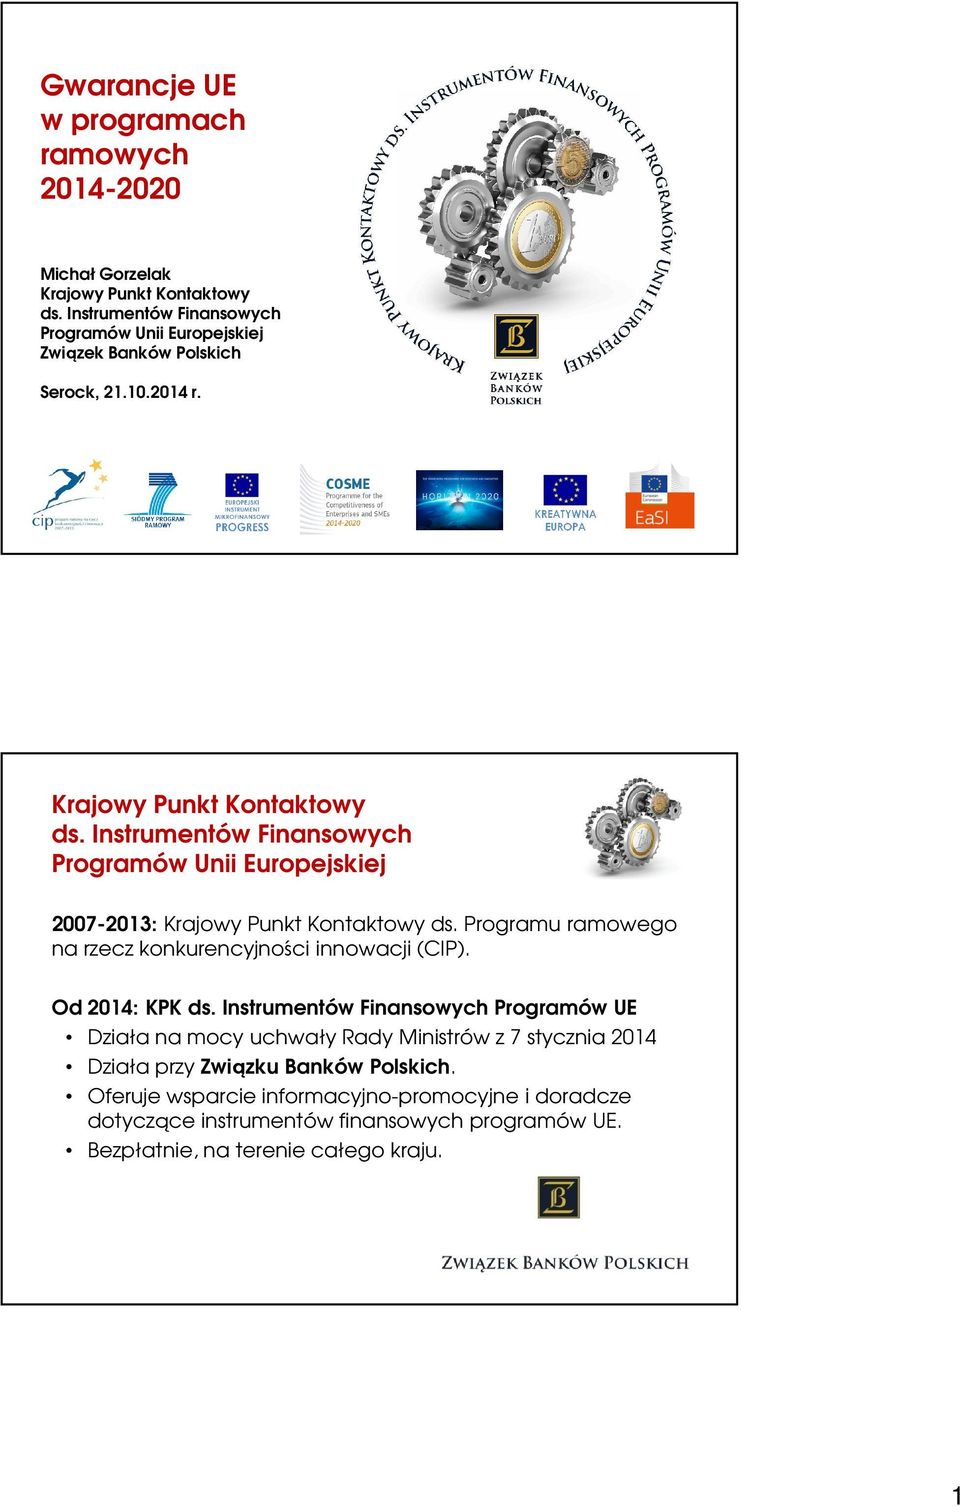 Instrumentów Finansowych Programów Unii Europejskiej 2007-2013: Krajowy Punkt Kontaktowy ds. Programu ramowego na rzecz konkurencyjności innowacji (CIP).